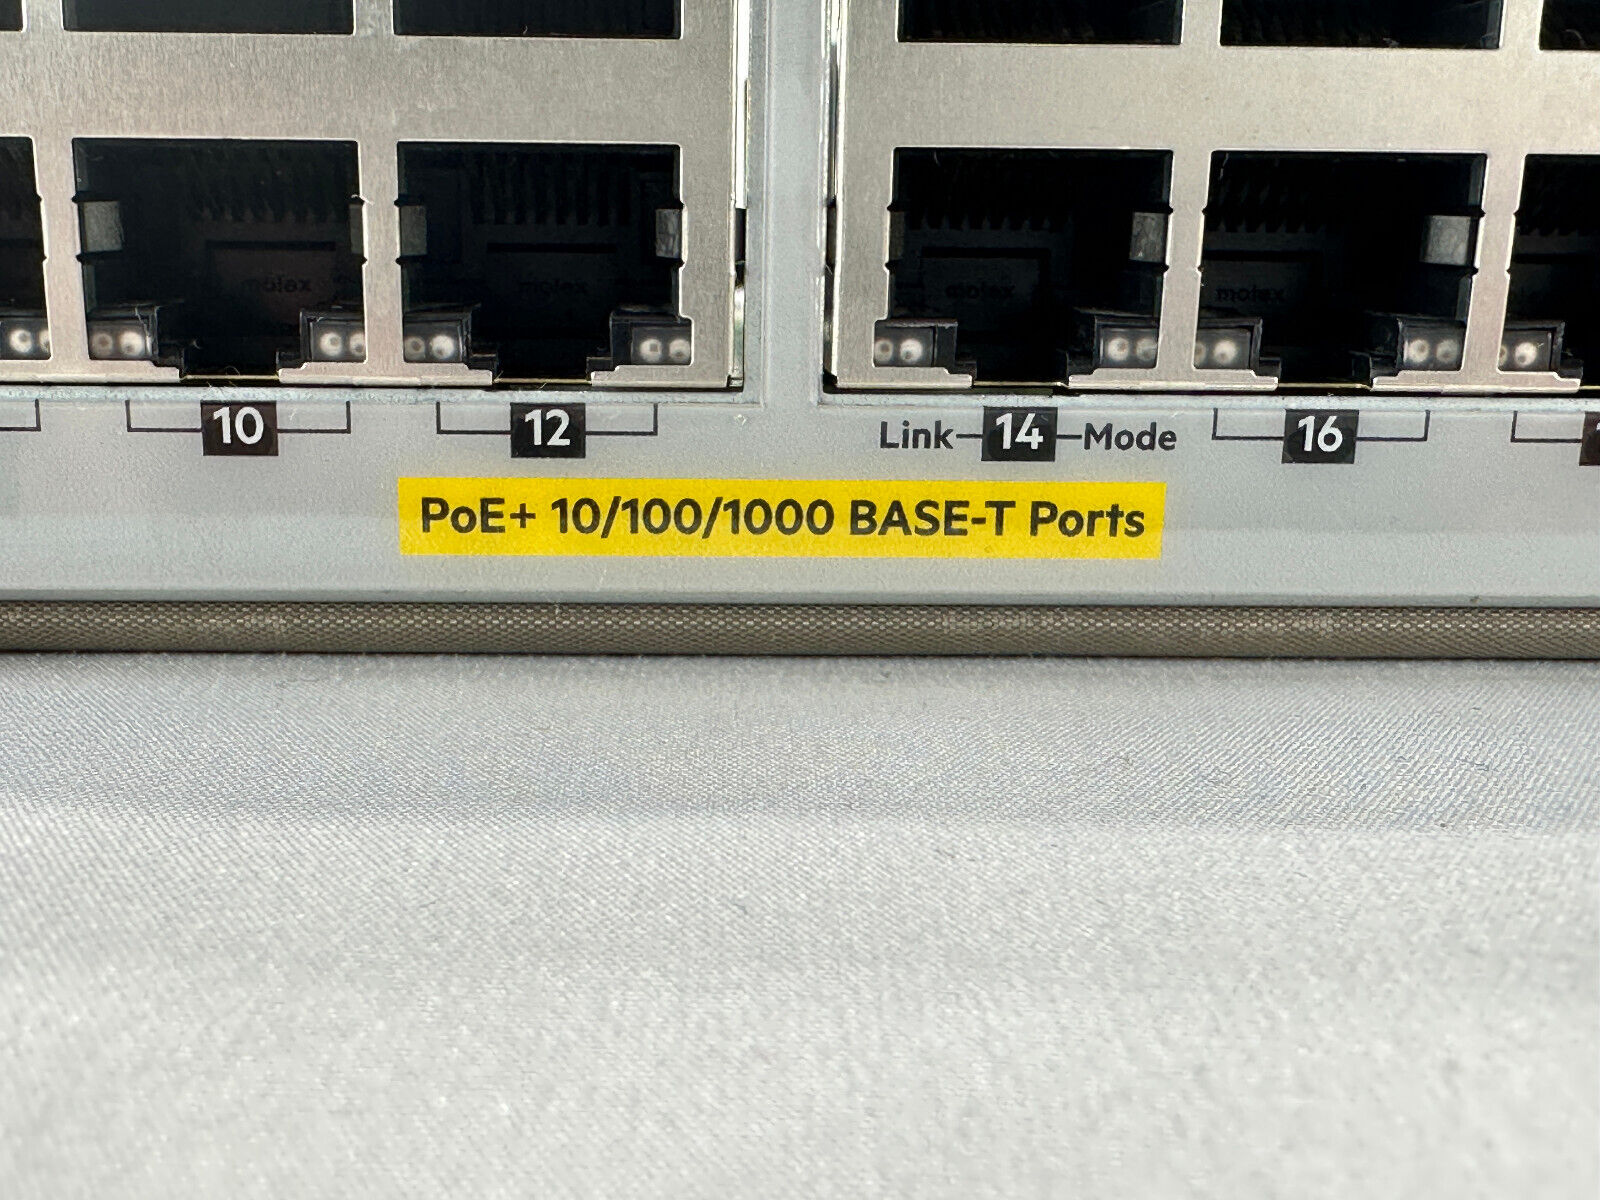 HPE J9986A 24 RJ-45 10/100/1000BASE-T Port Managed Gigabit Ethernet Switch.